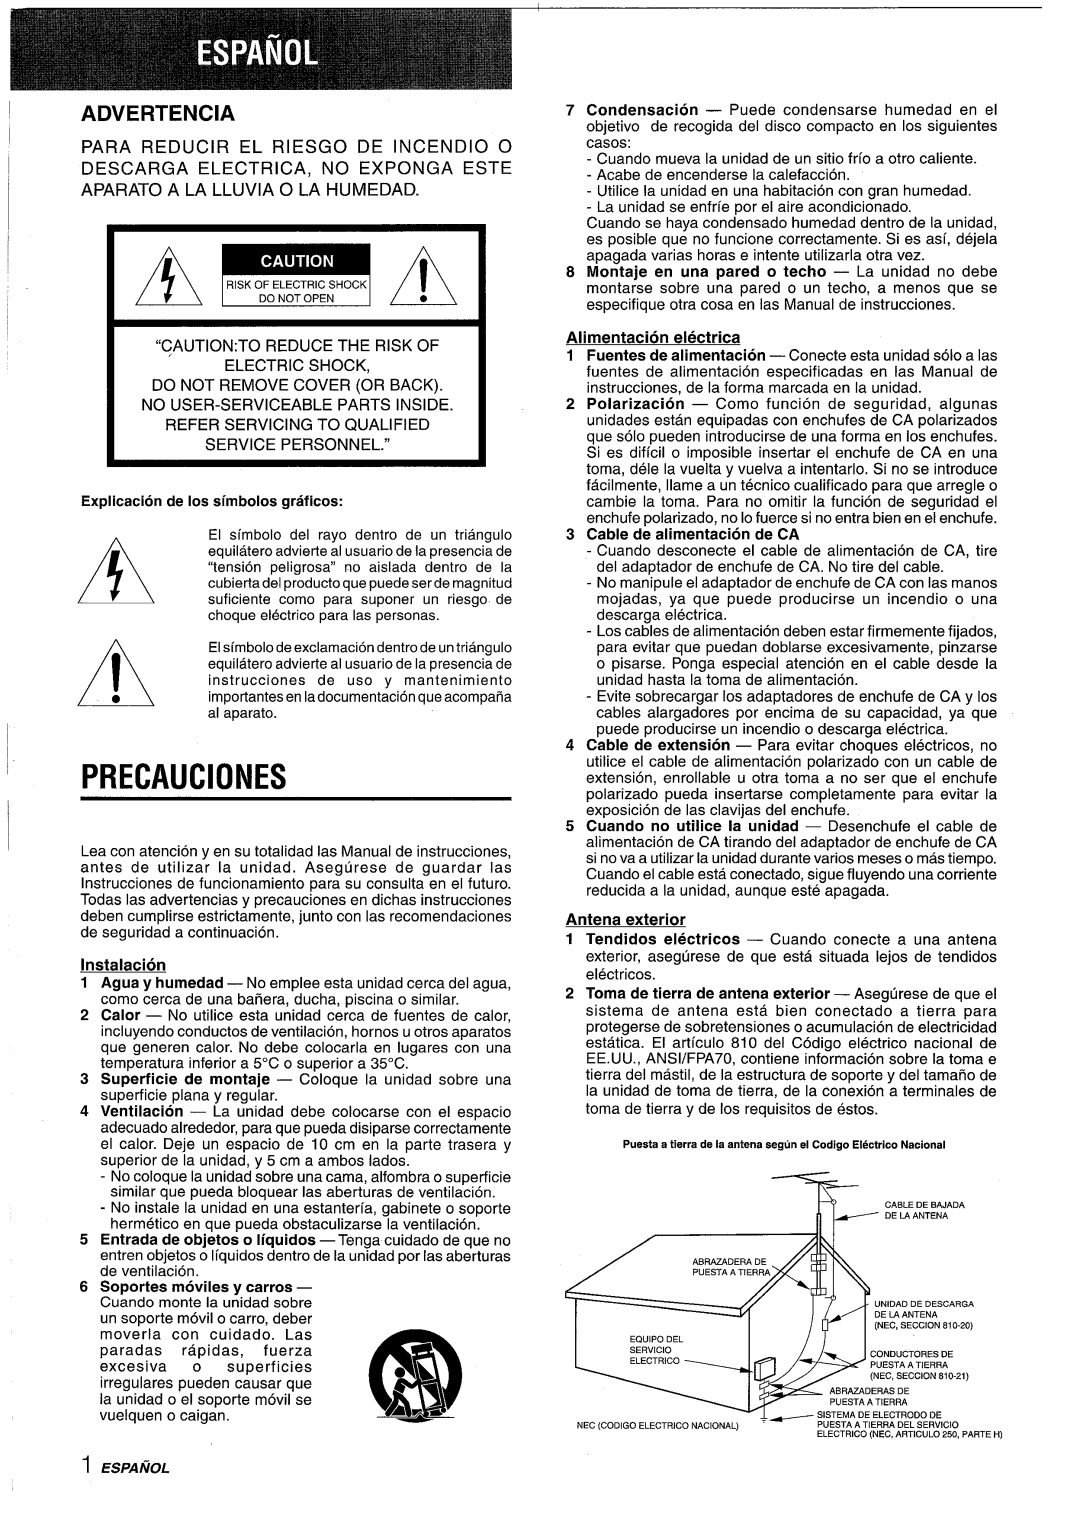 Sony CX-ZR525 Precauciones, Advertencia, PARA REDUCIR EL RIESGO DE INCENDIO o, Explication de Ios simbolos graficos, 1A ~ 